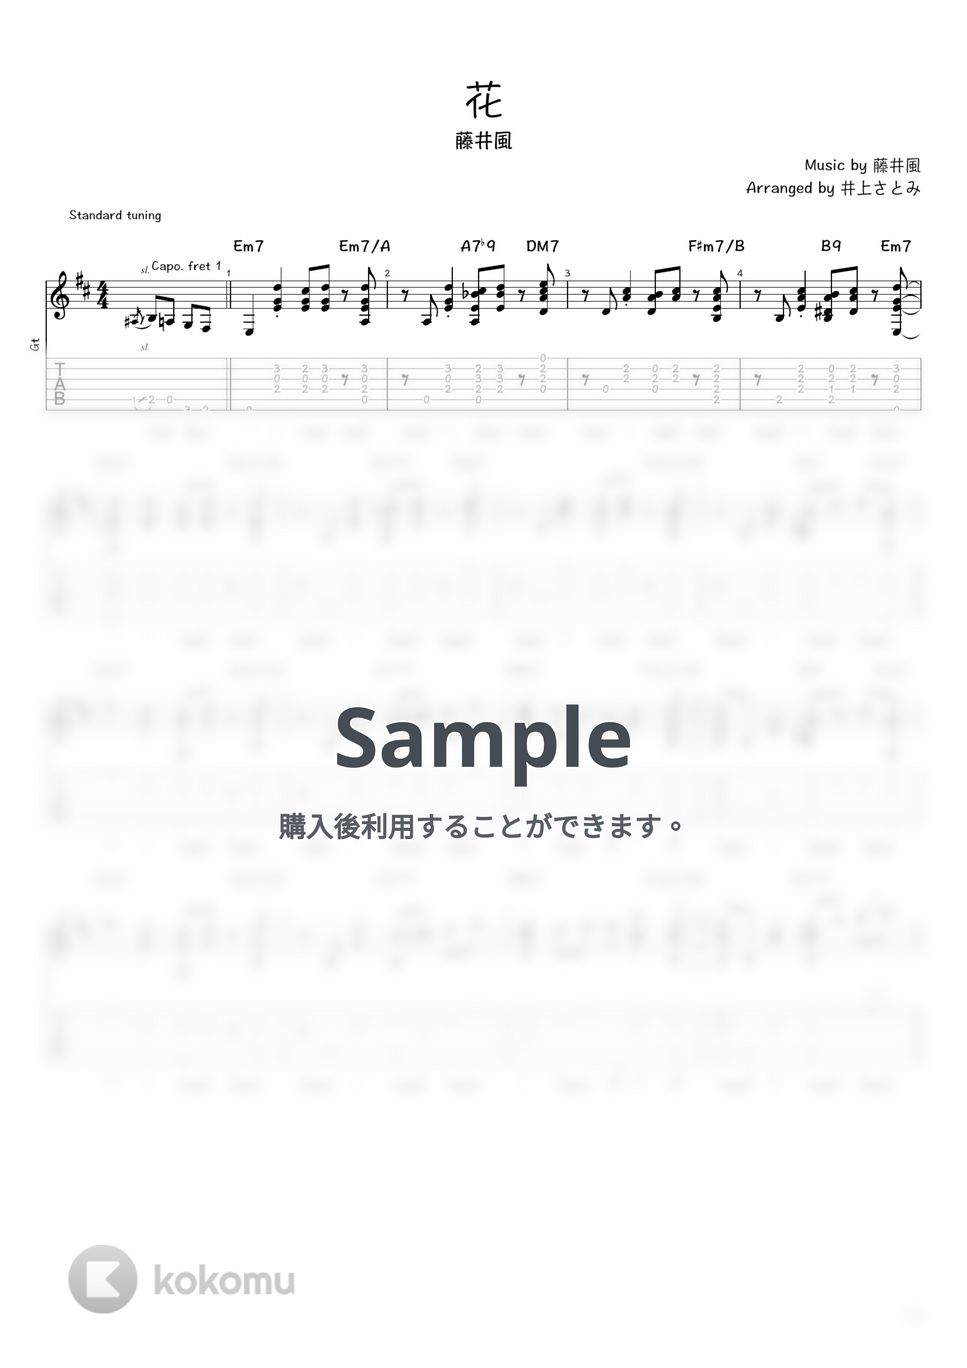 藤井風 - 花 (ソロギター / タブ譜) by 井上さとみ